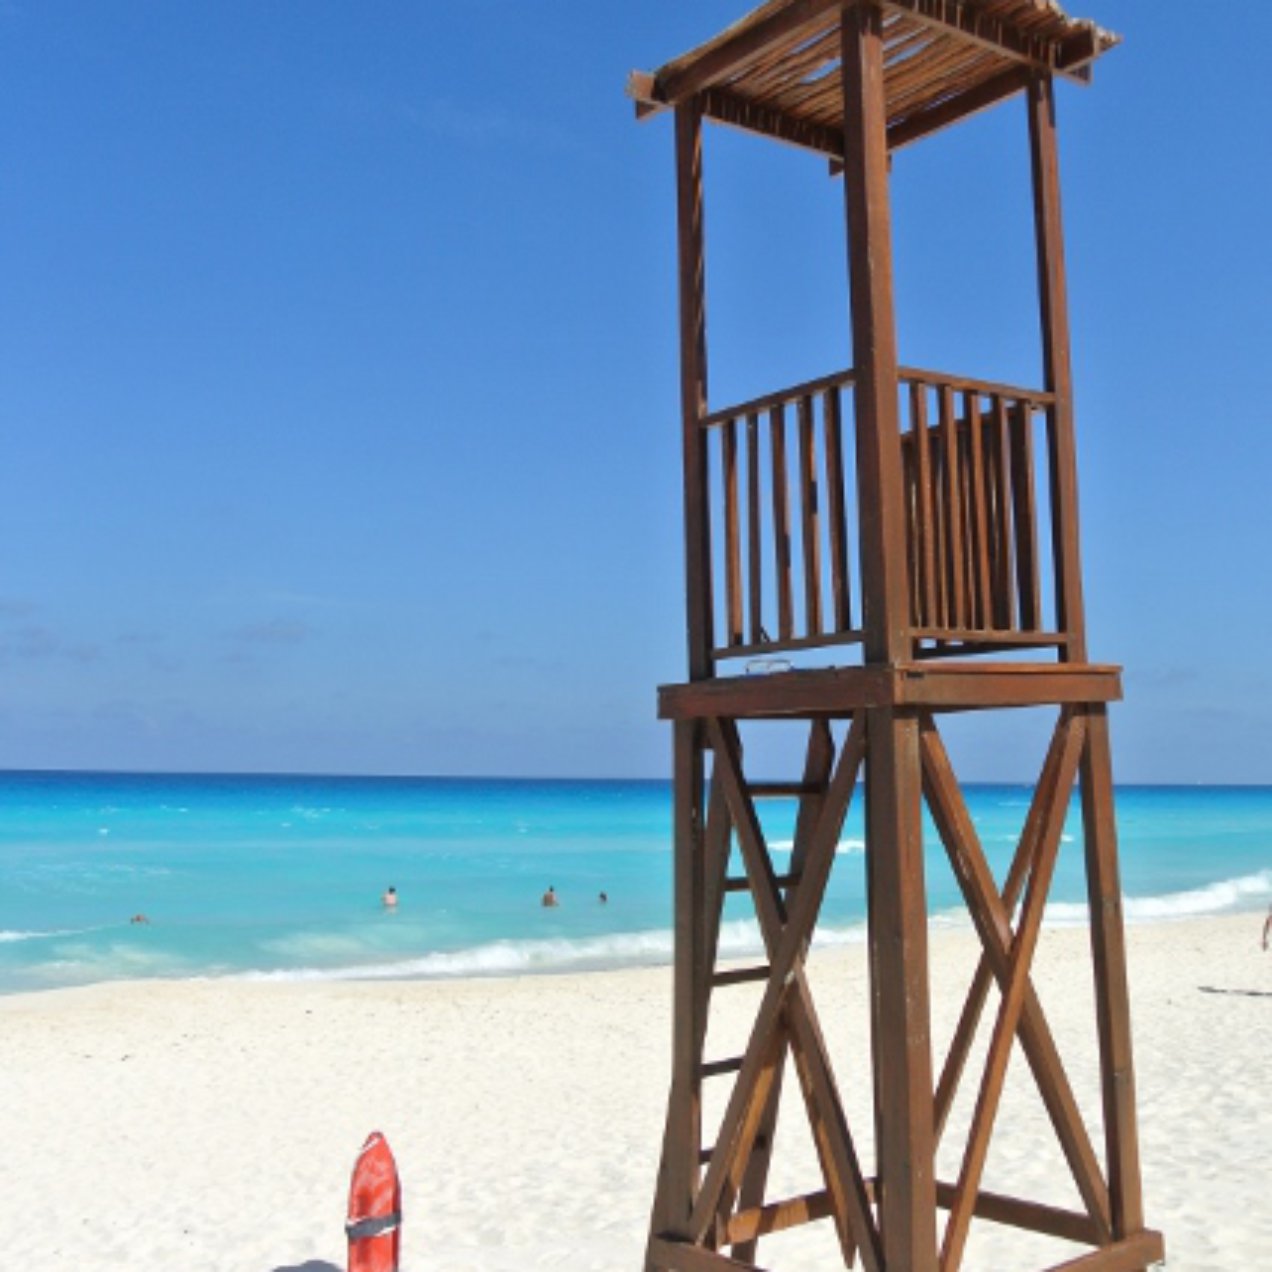 La playa azul de Sandos Cancun en La Riviera Maya en Mexico